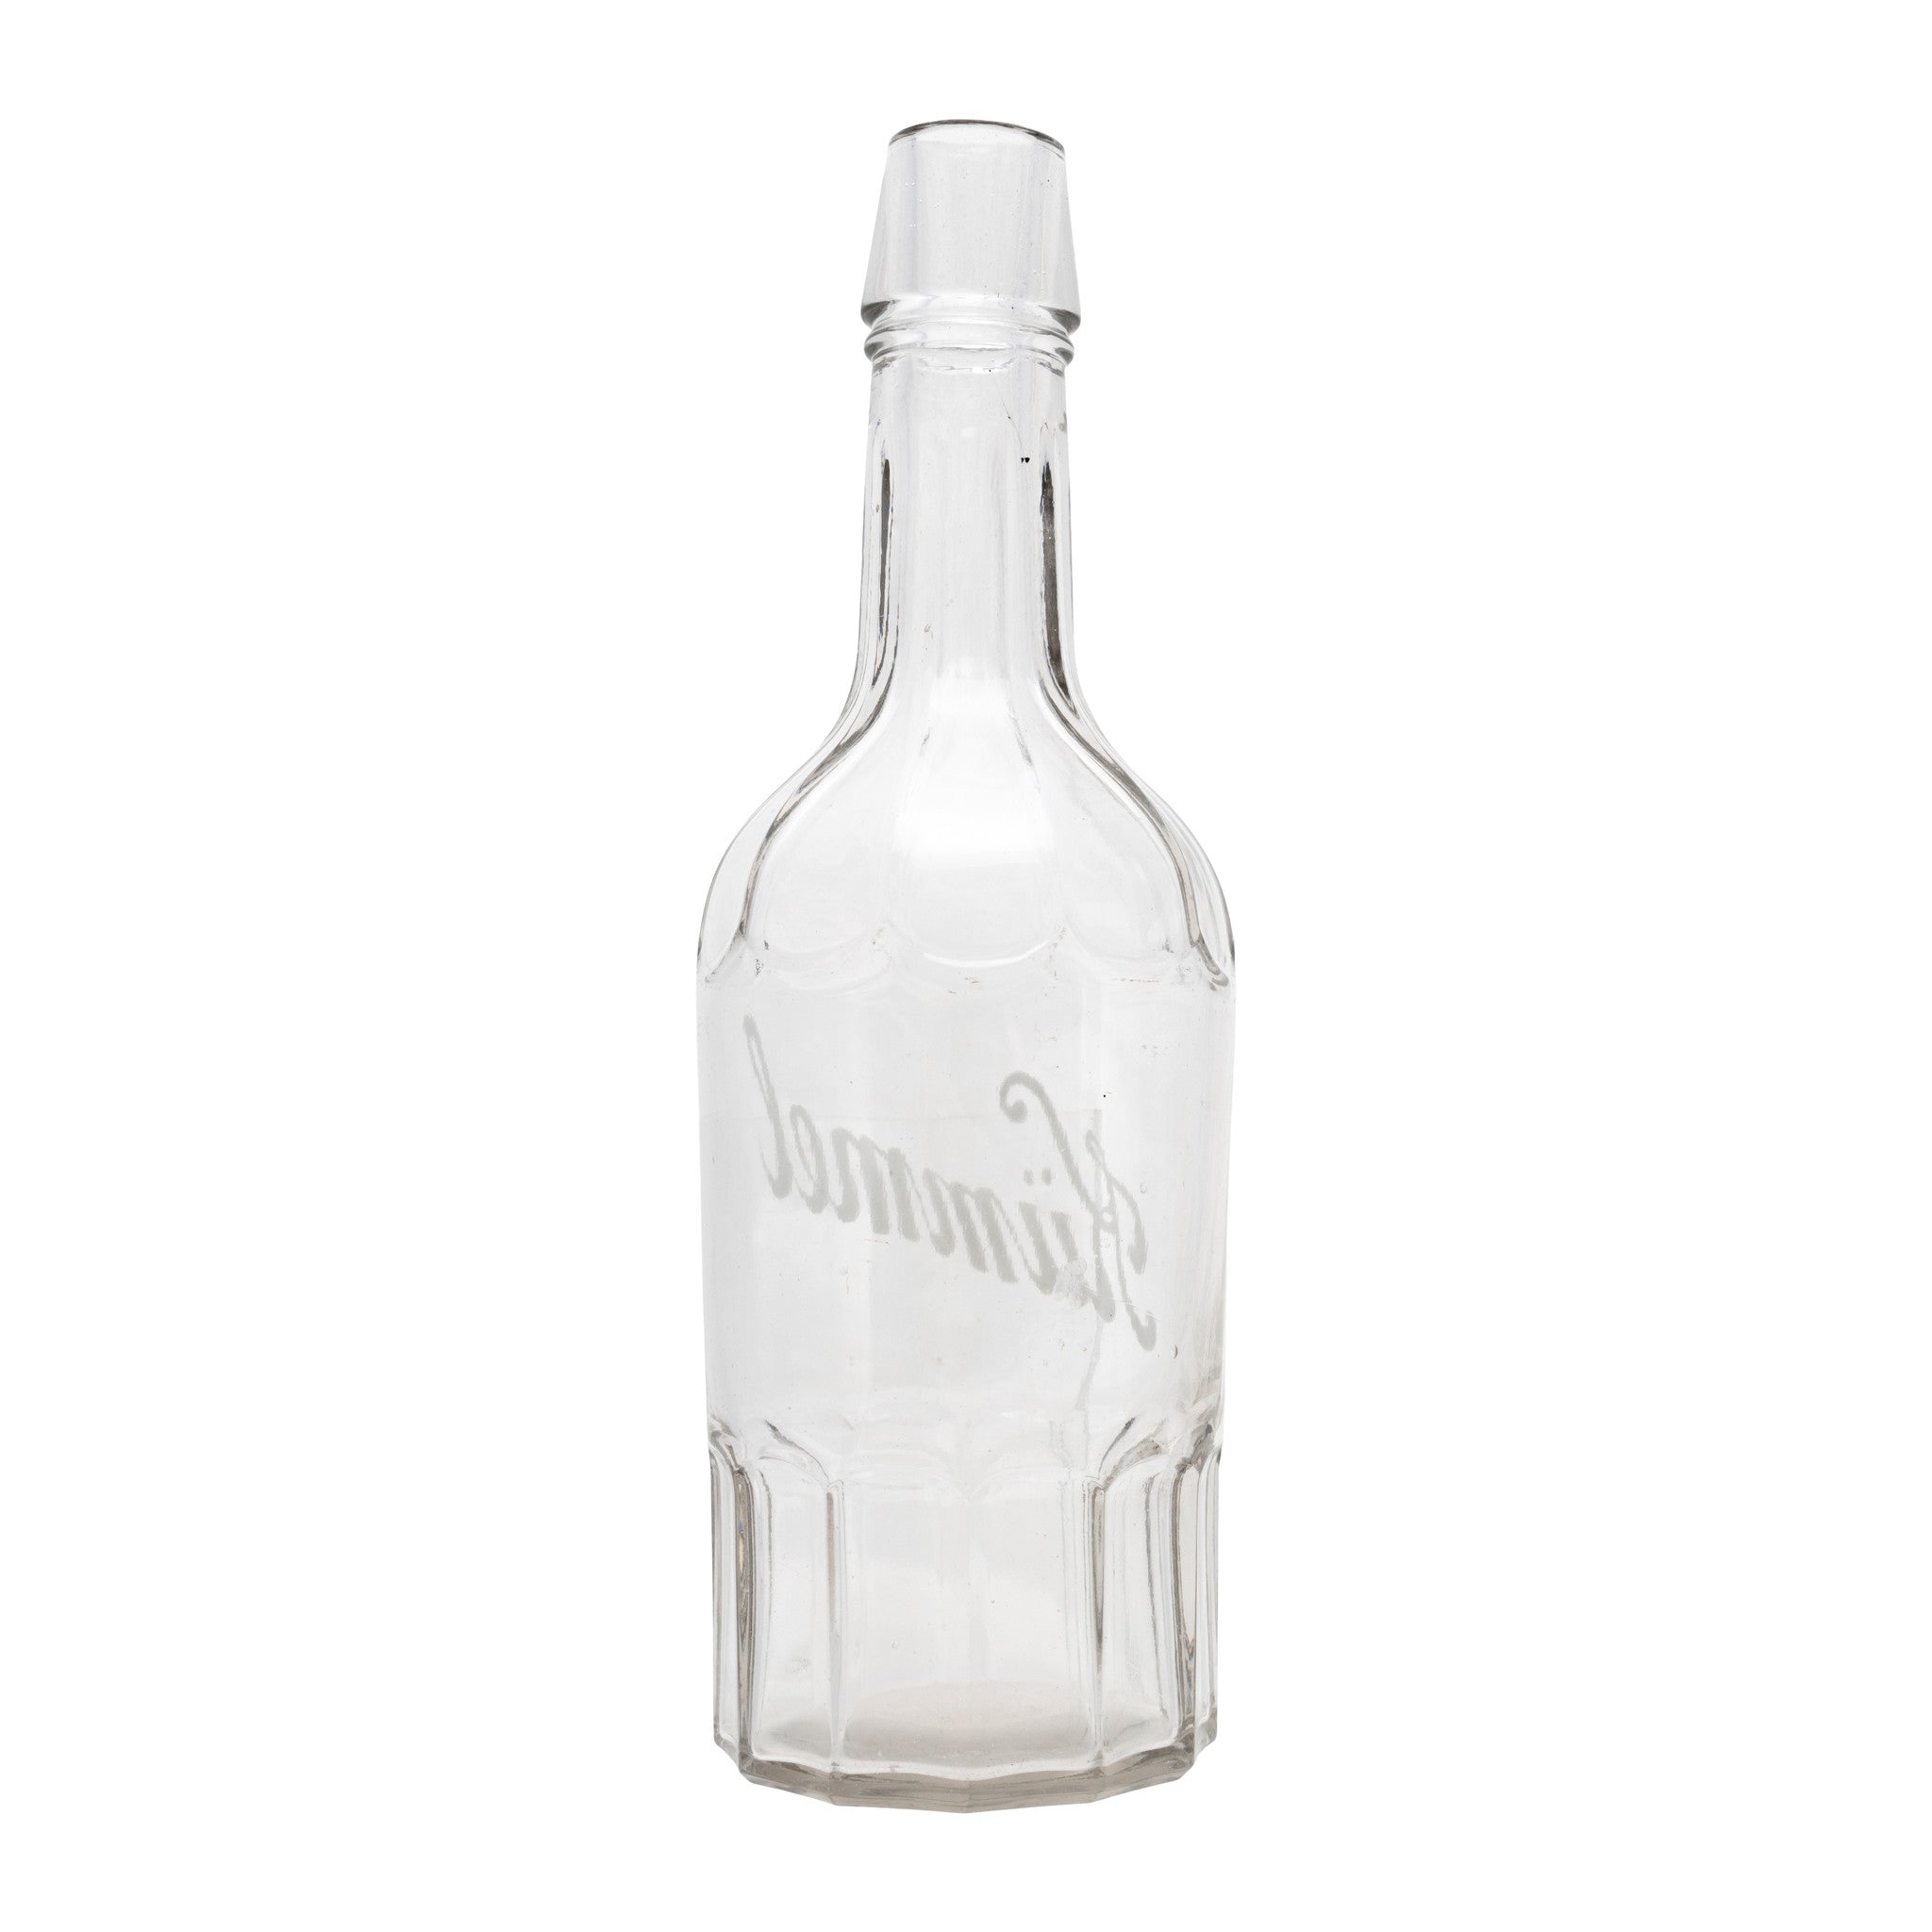 "Kiimmell" Back Bar Bottle